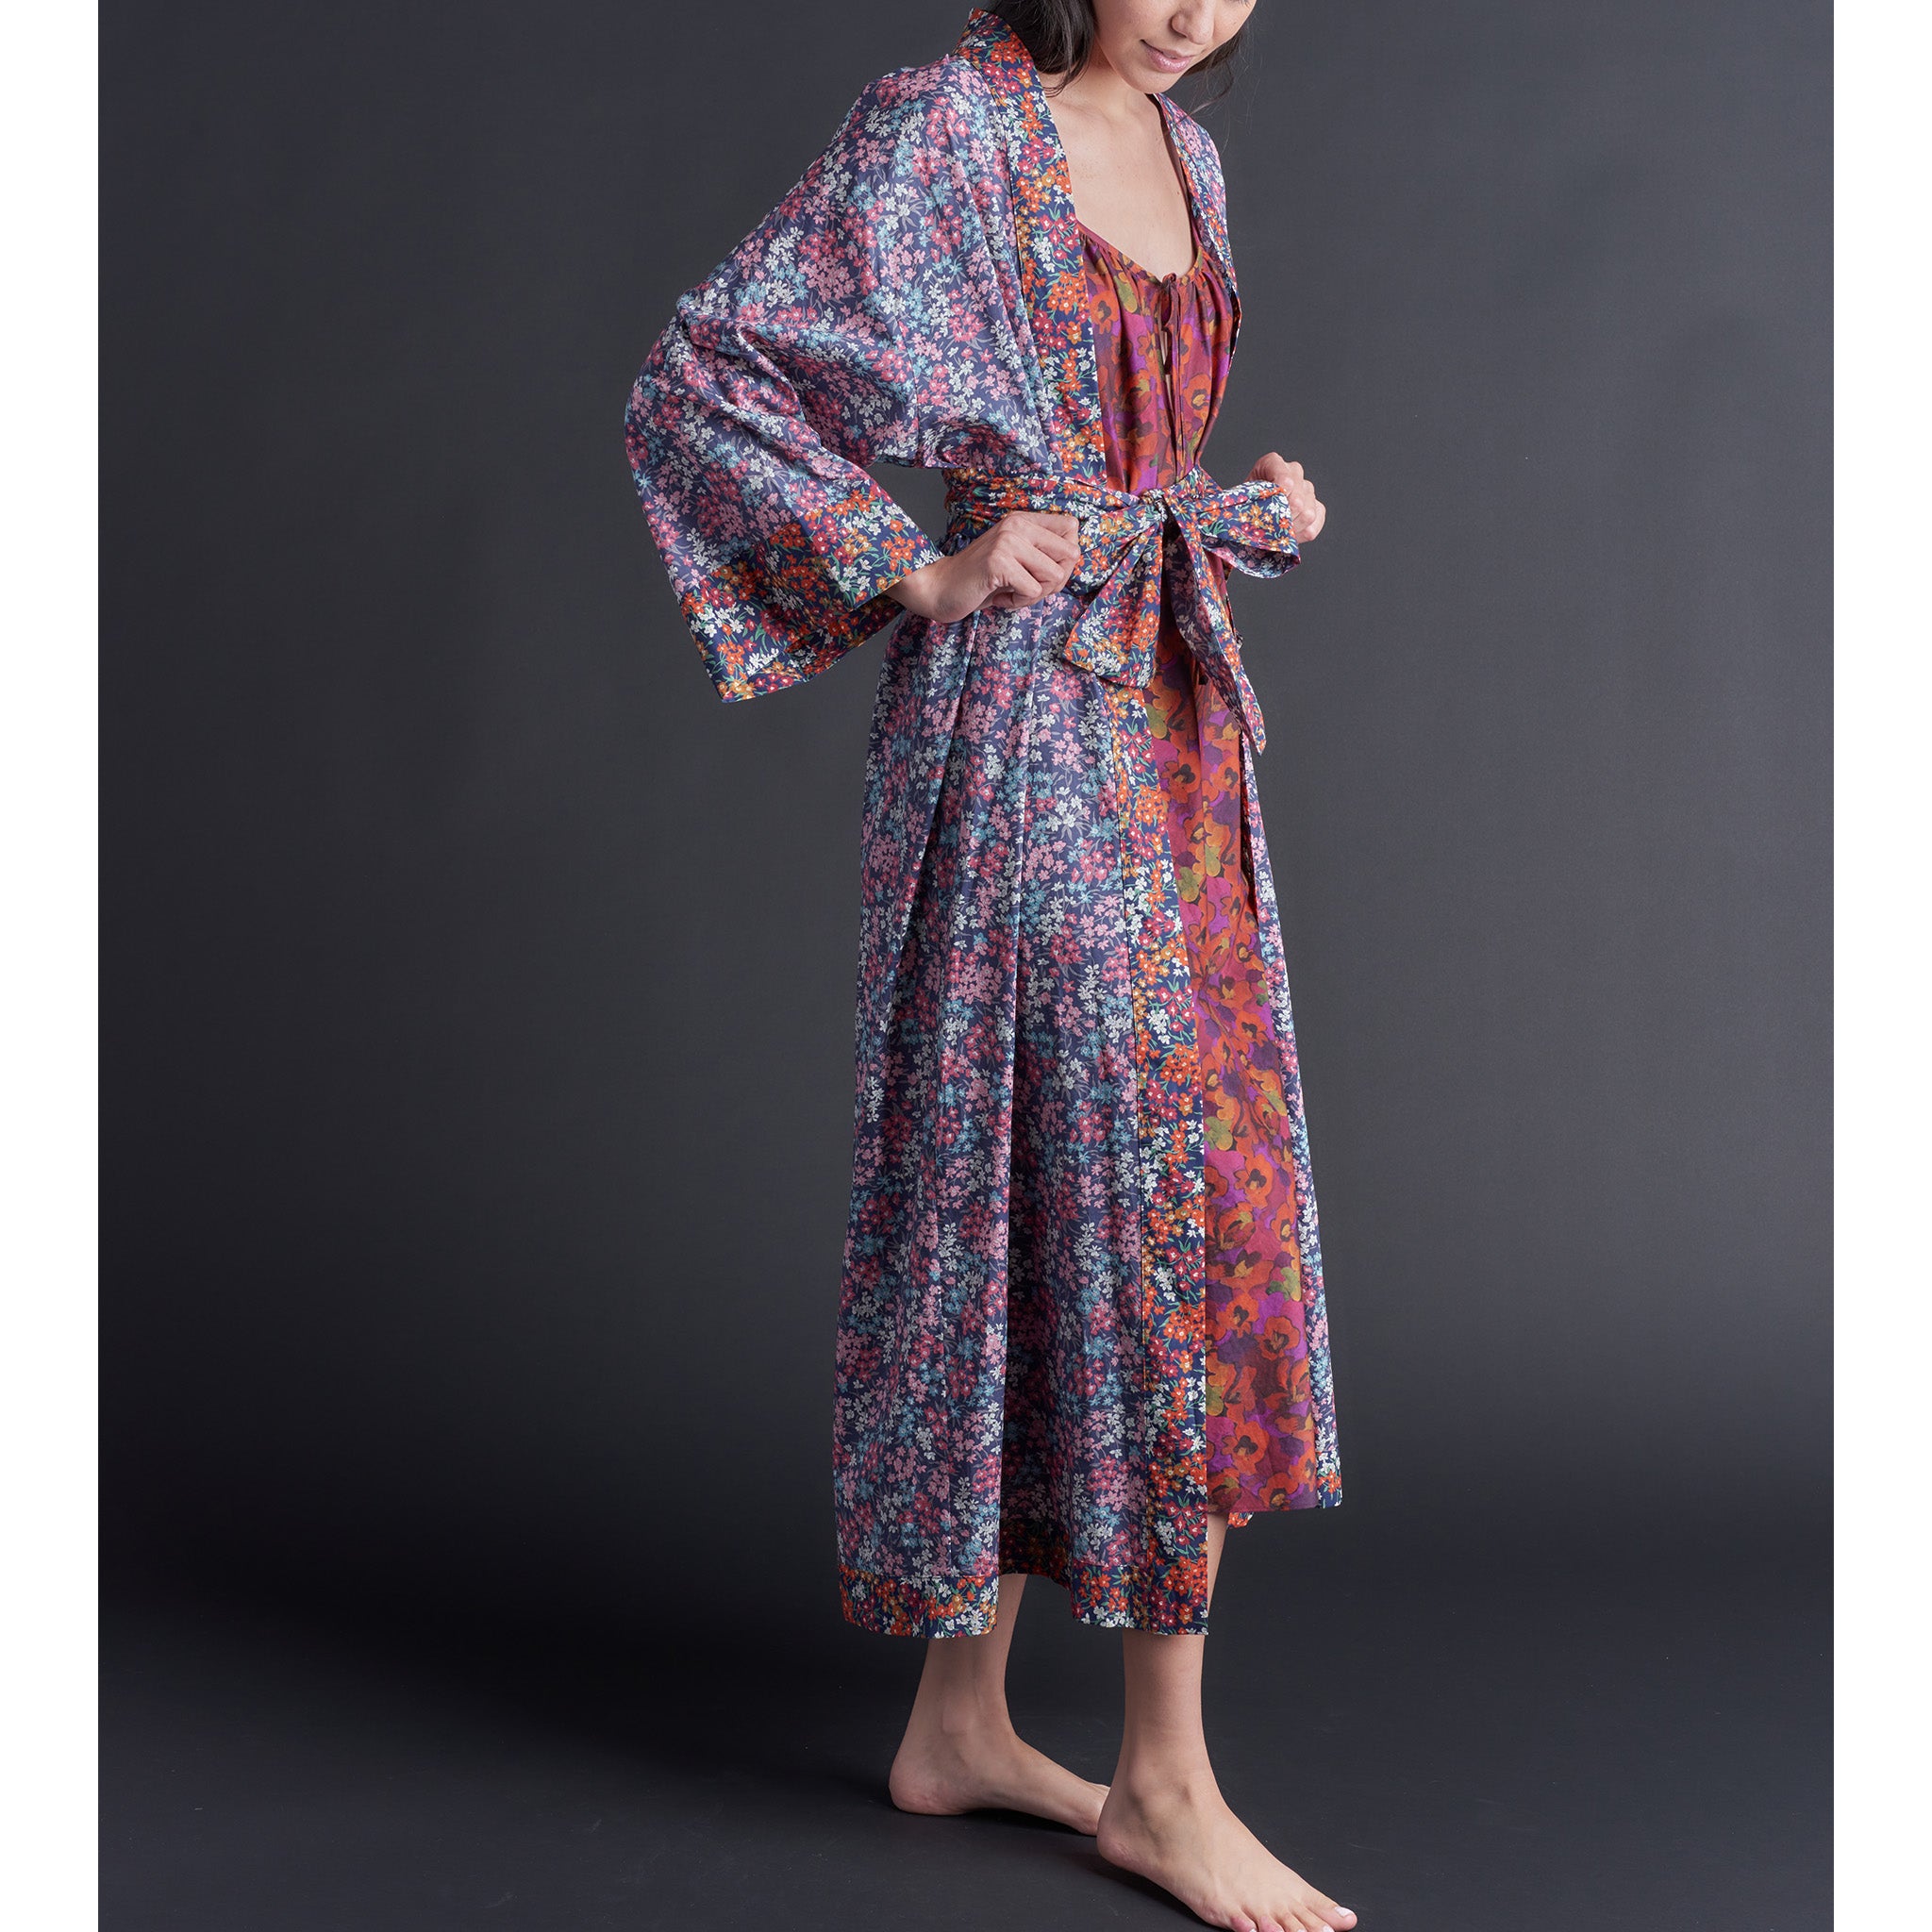 Asteria Kimono Robe in Sea Blossom Liberty of London Print Cotton Lawn